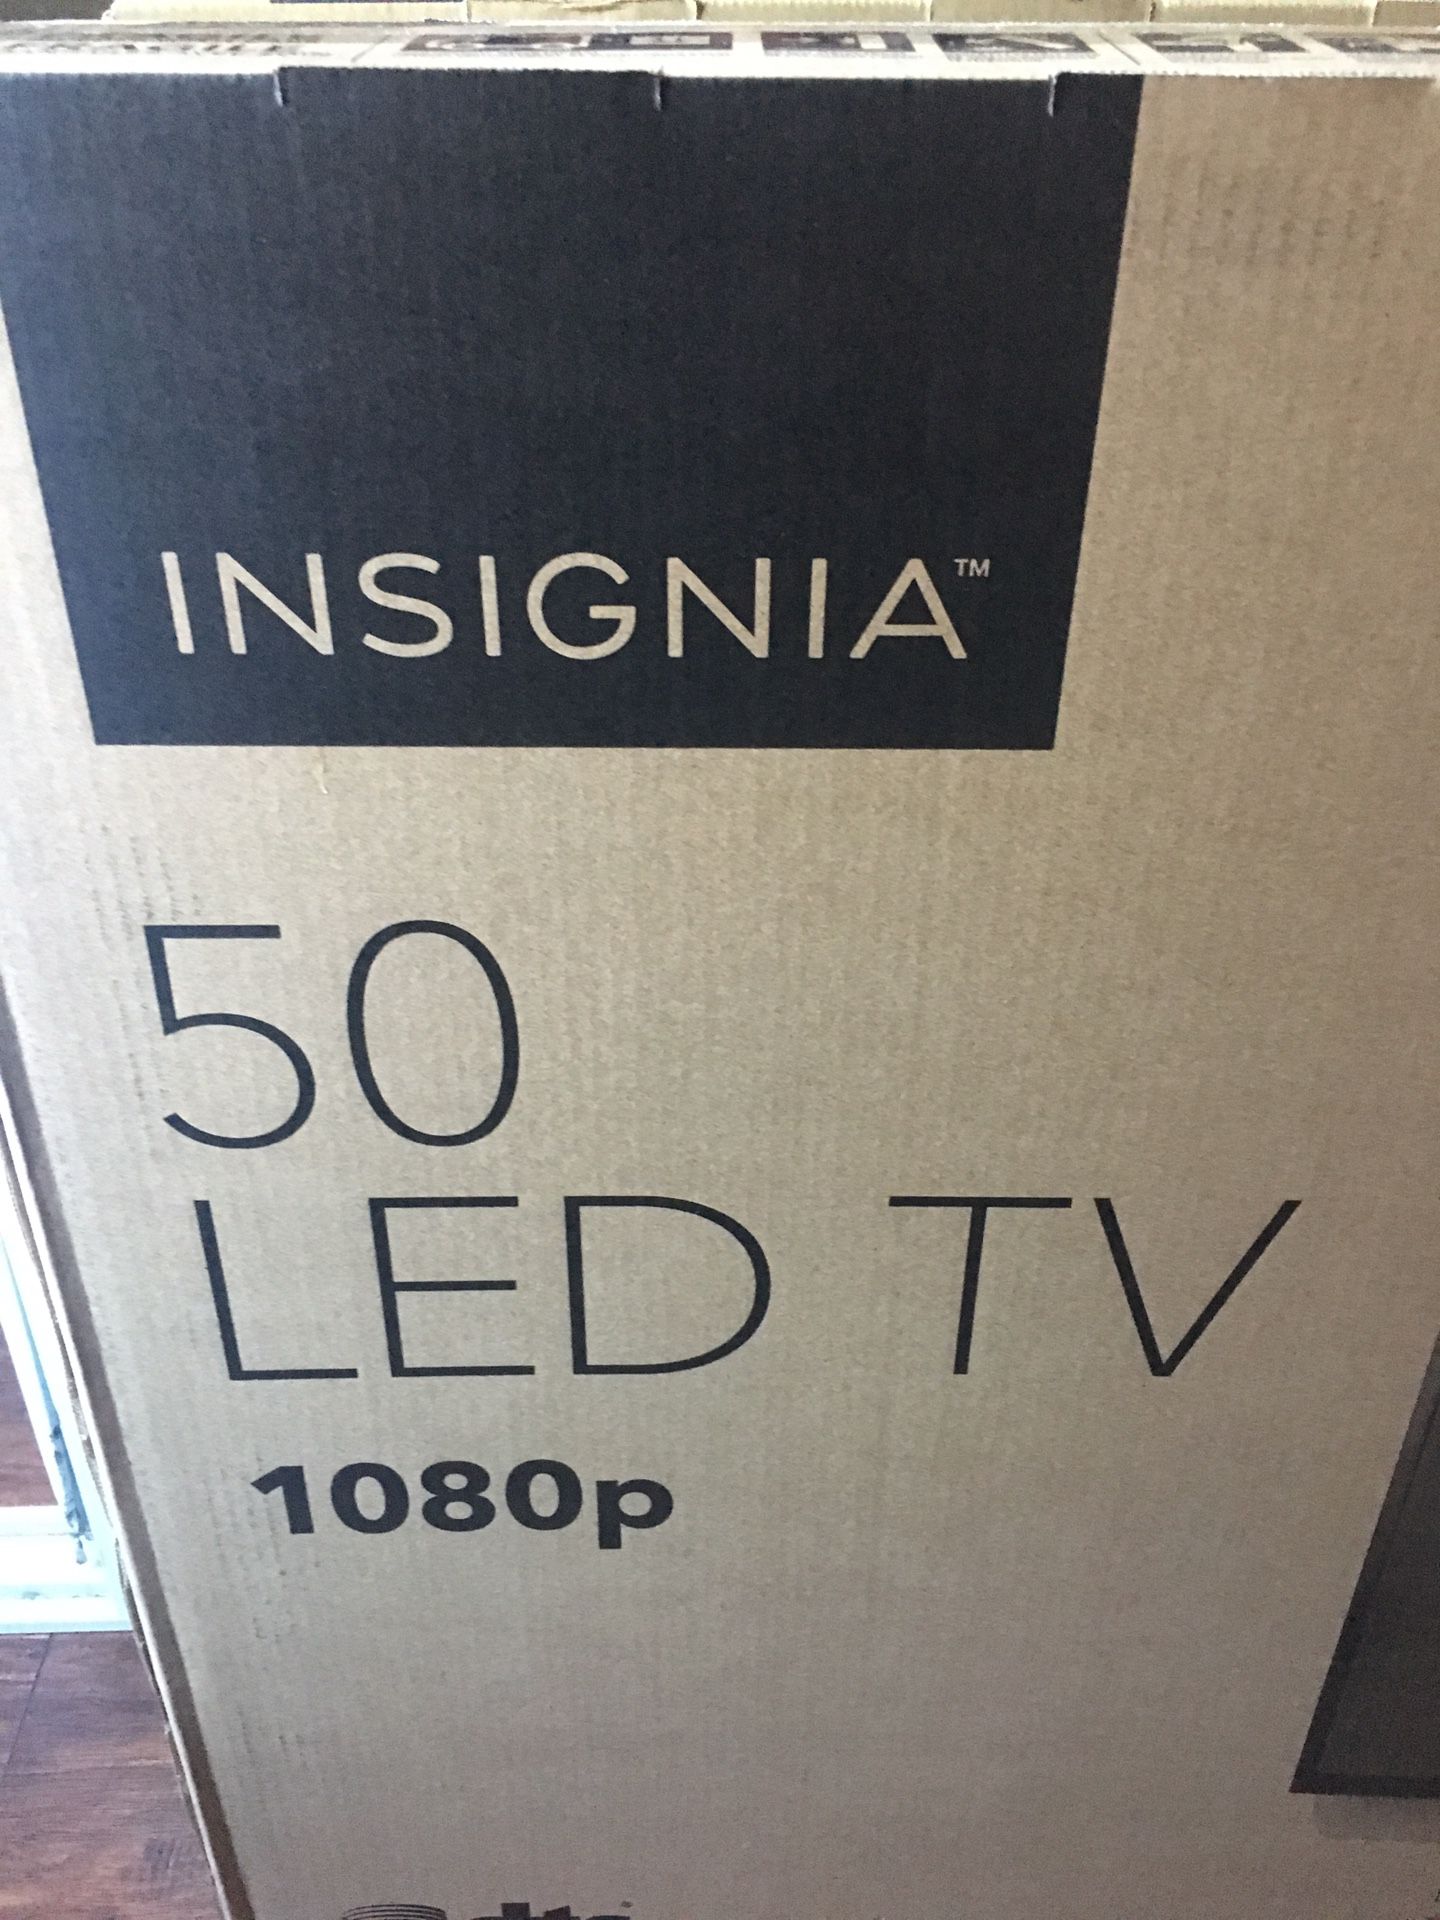 Insignia 50 inch tv led 1080